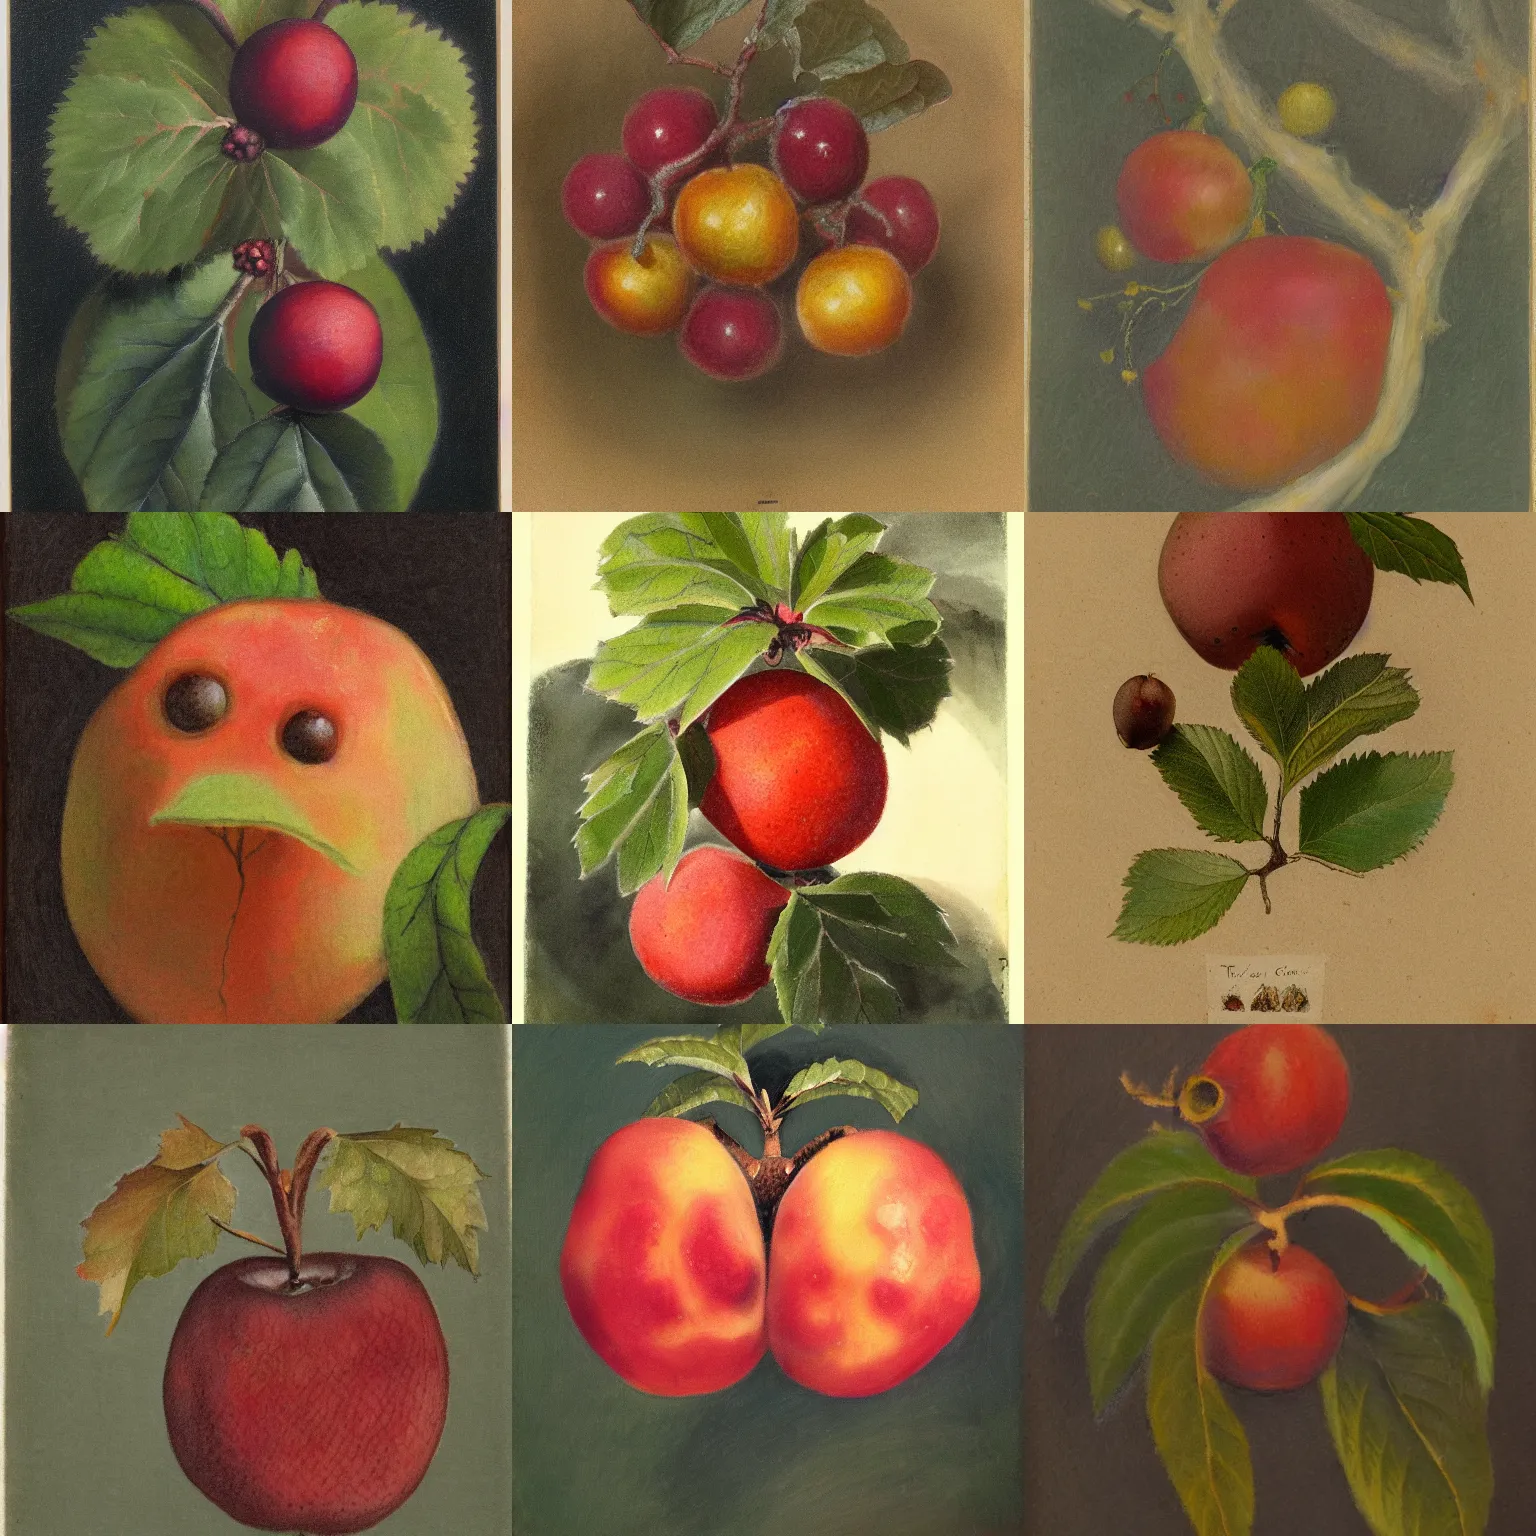 Prompt: tonalist portrait of crataegus fruit creature